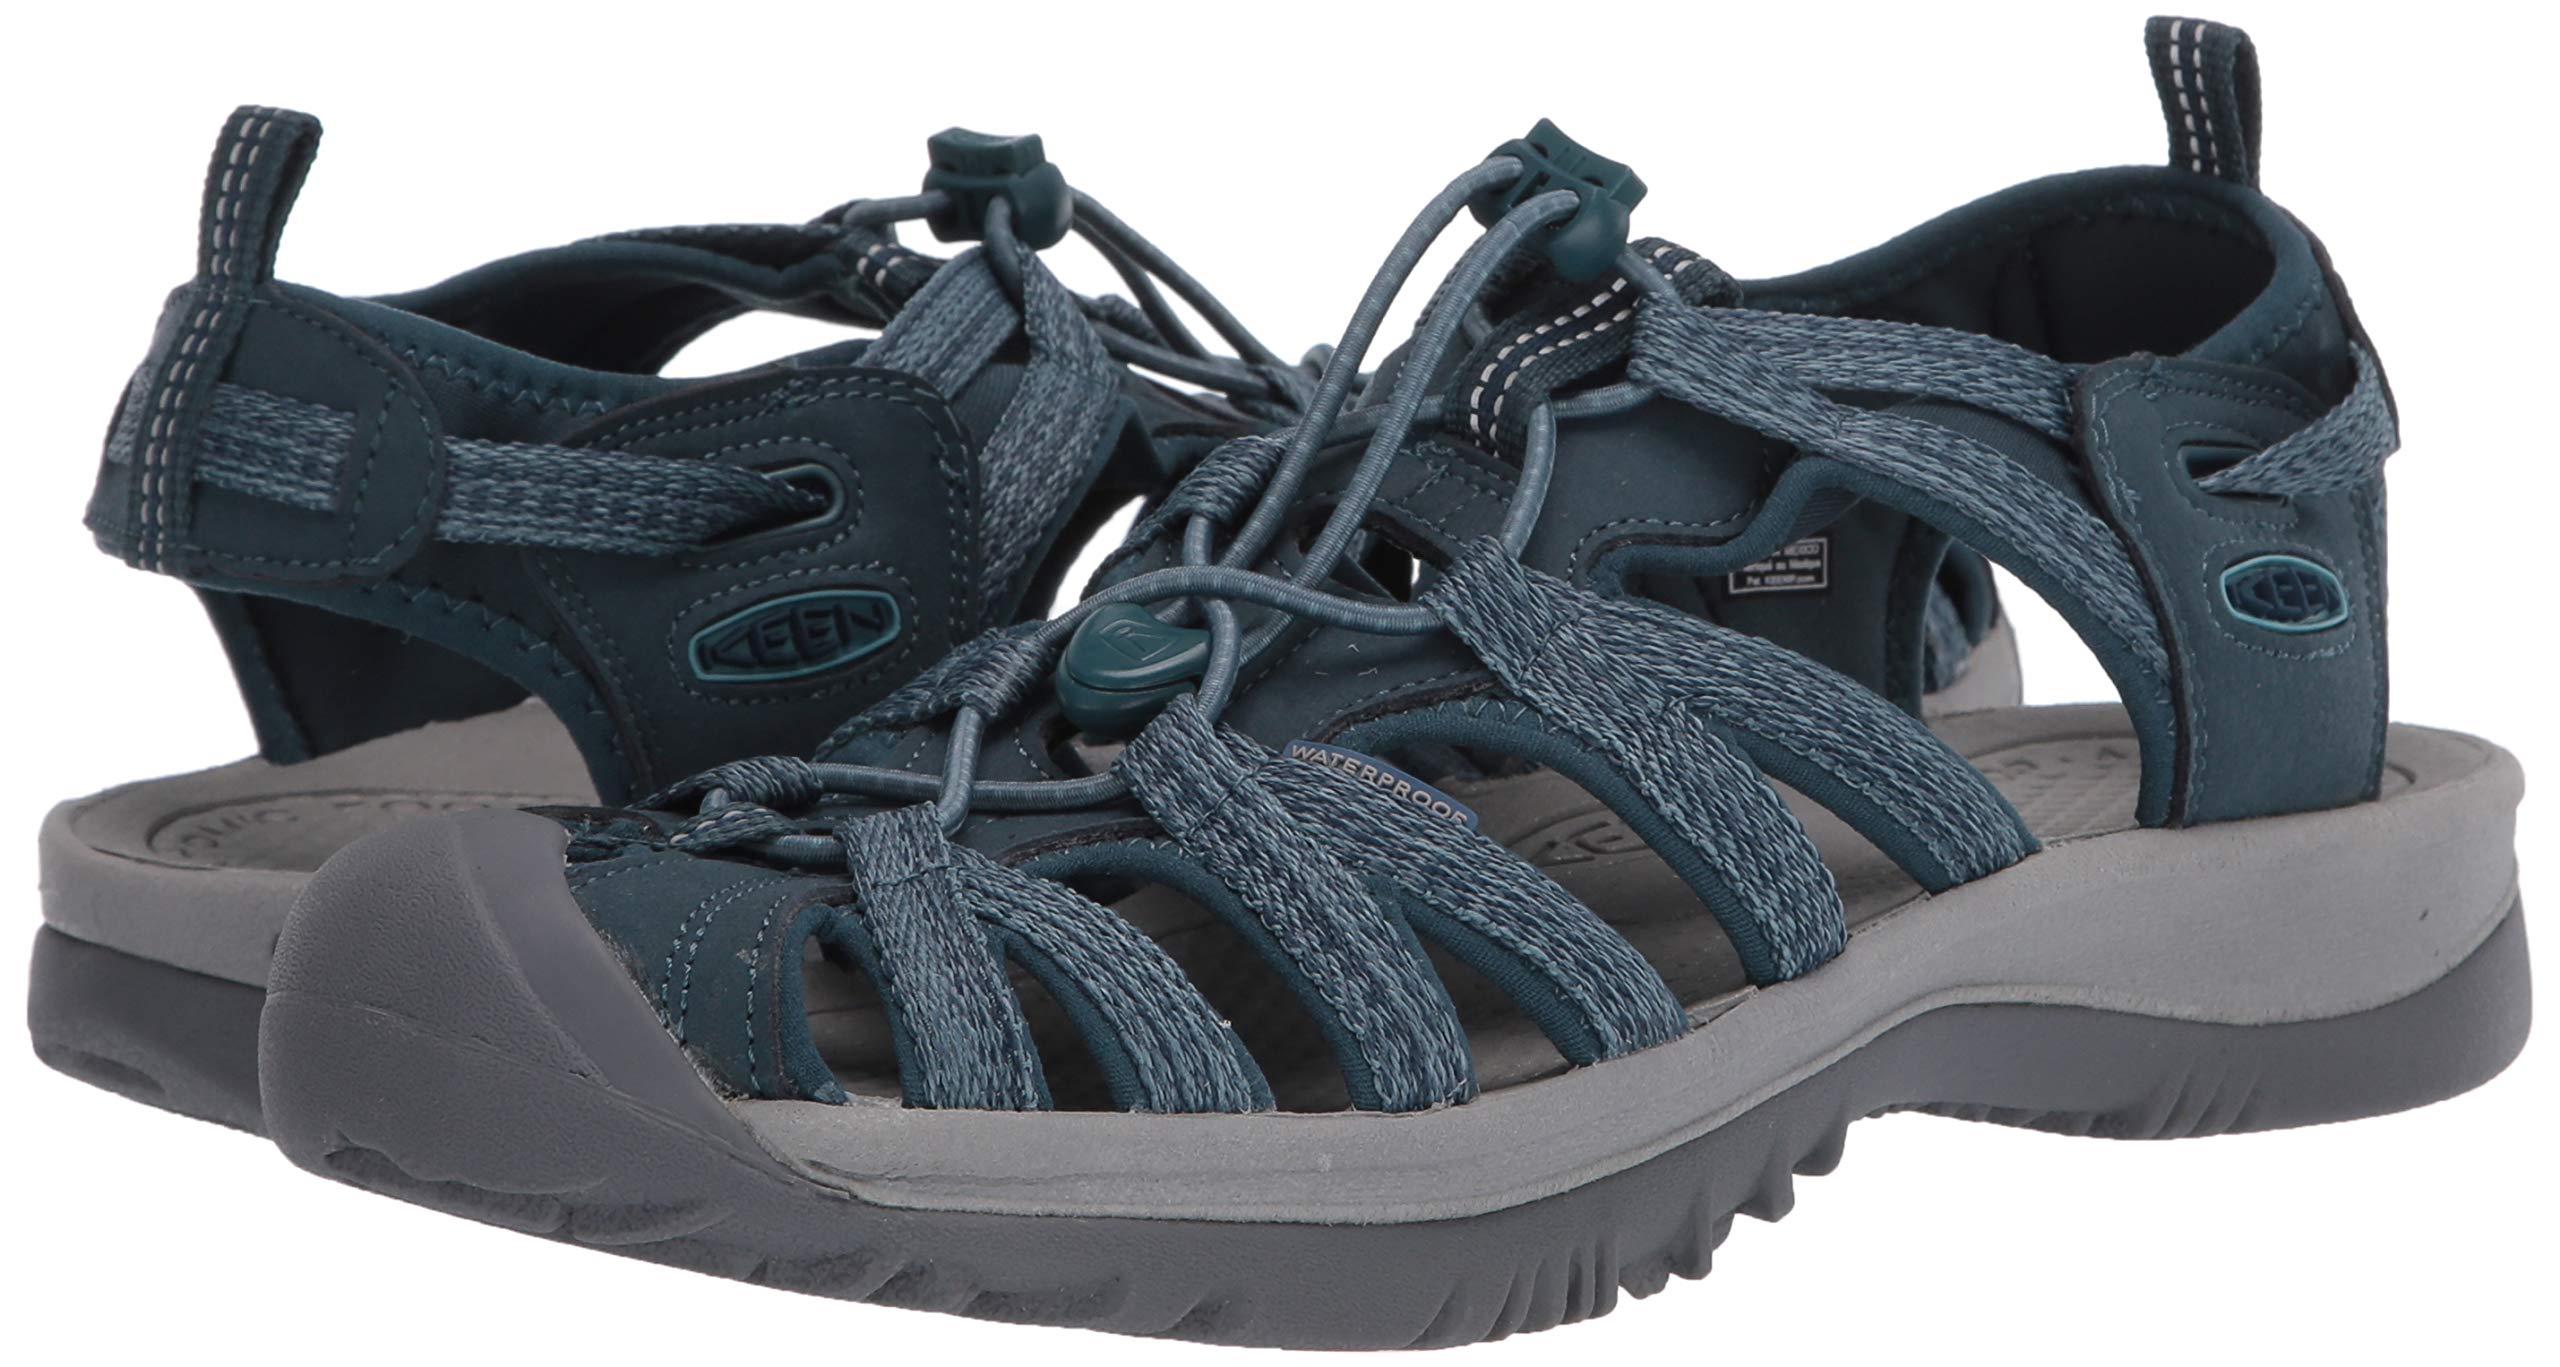 KEEN Women's Whisper Closed Toe Sport Sandals, Smoke Blue, 10 US